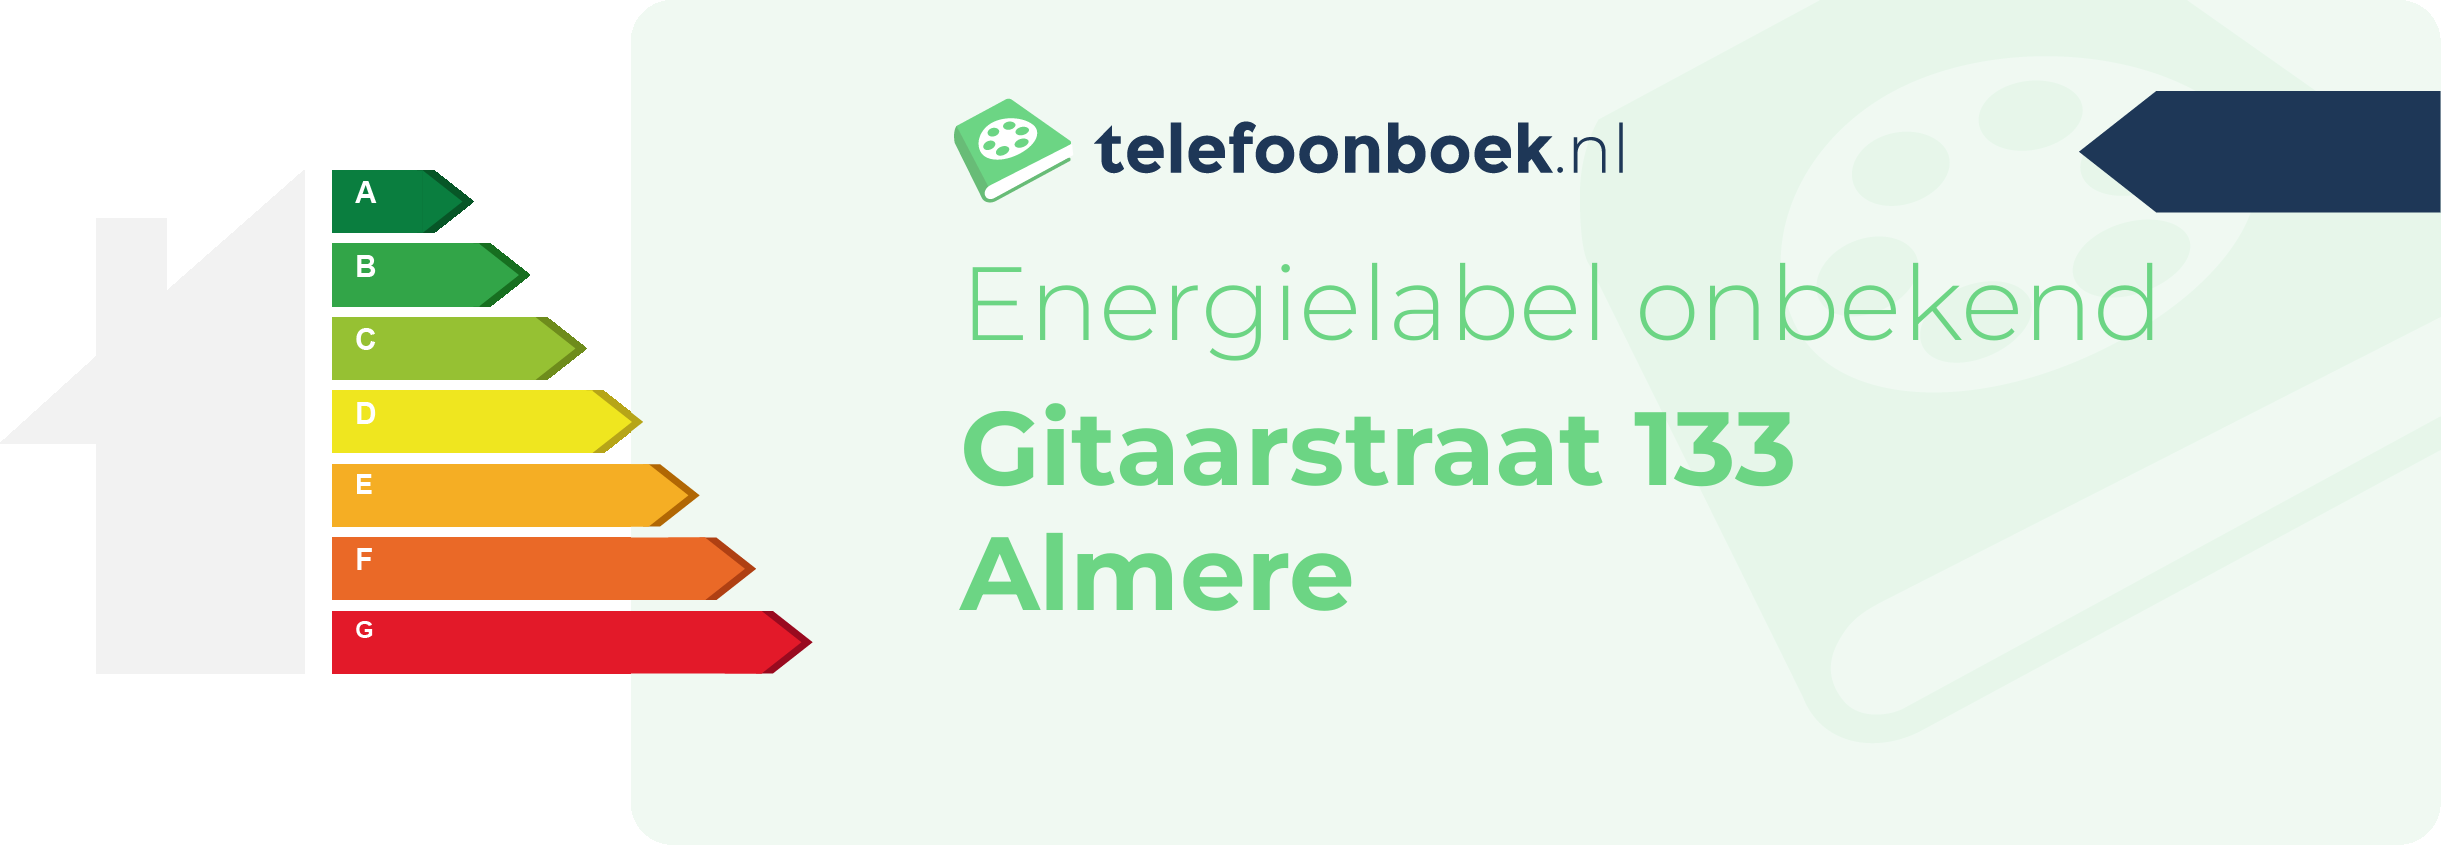 Energielabel Gitaarstraat 133 Almere